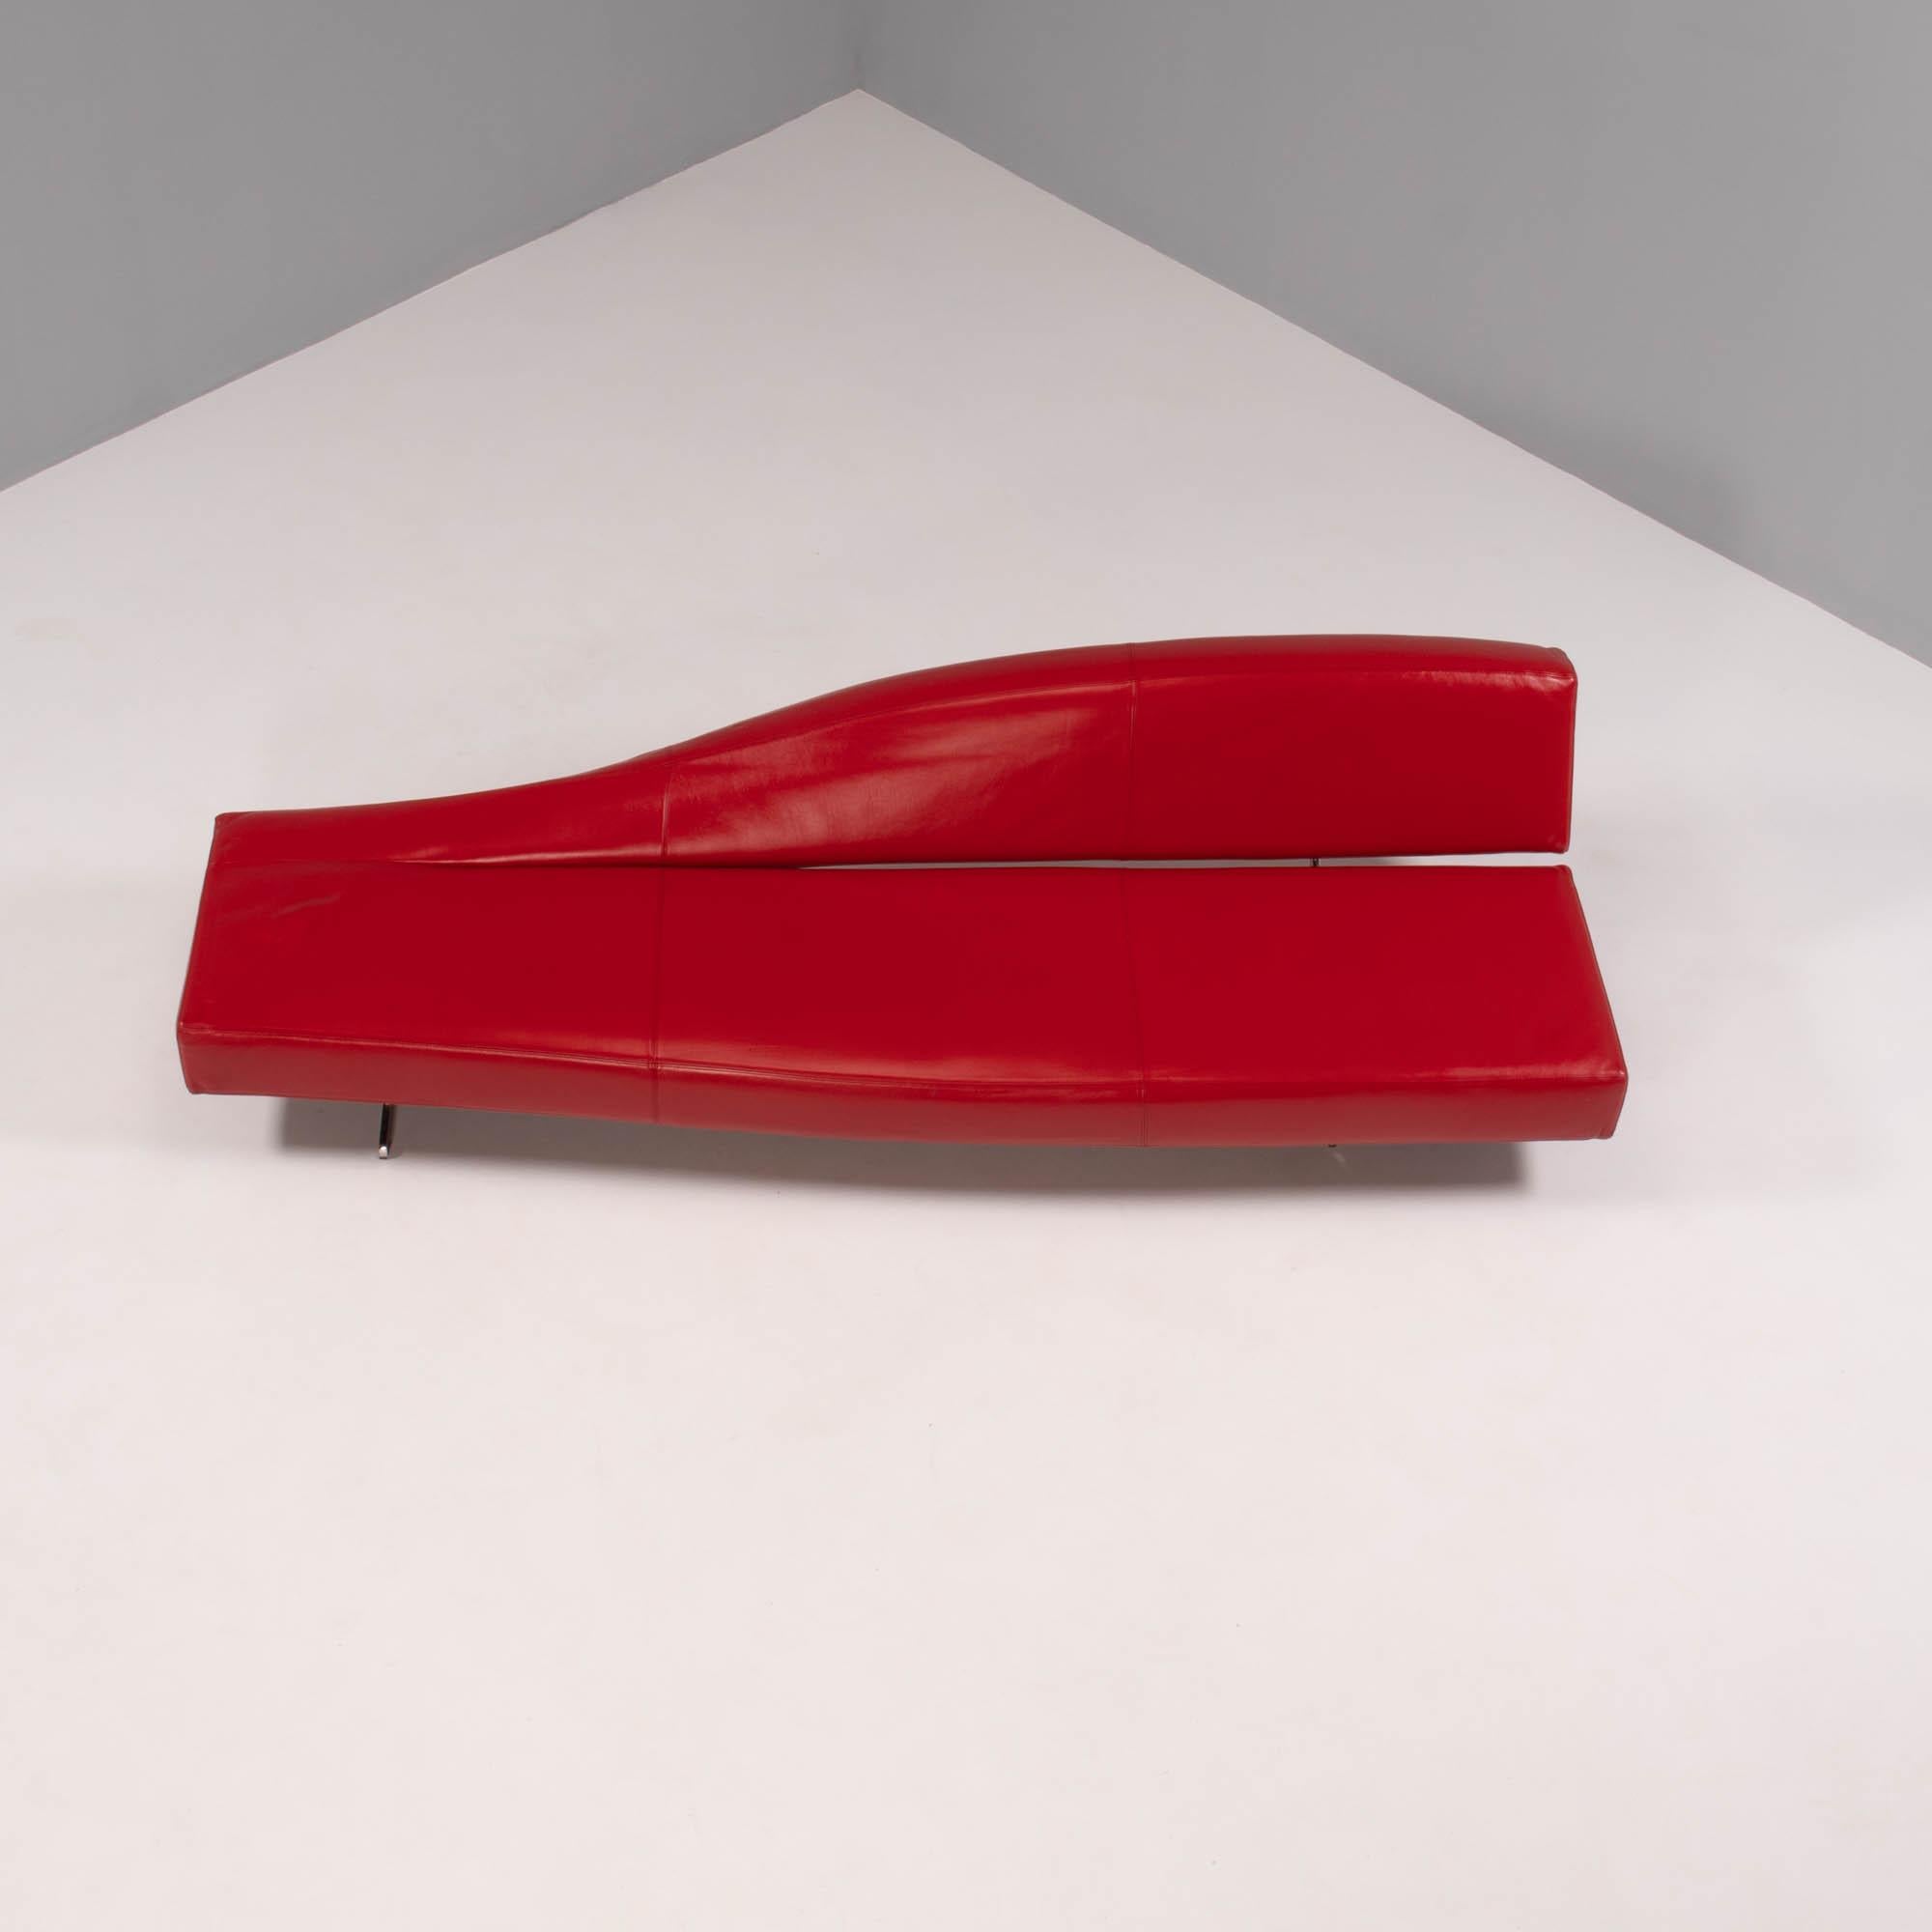 Das 2005 von Jean-Marie Massuad entworfene Sofa Aspen ist ein elegantes und anspruchsvolles Stück modernen Designs.

Das mit rotem Leder gepolsterte Sofa erweckt den Eindruck, als sei es aus einem einzigen Stück gefertigt.

Die schräg nach unten